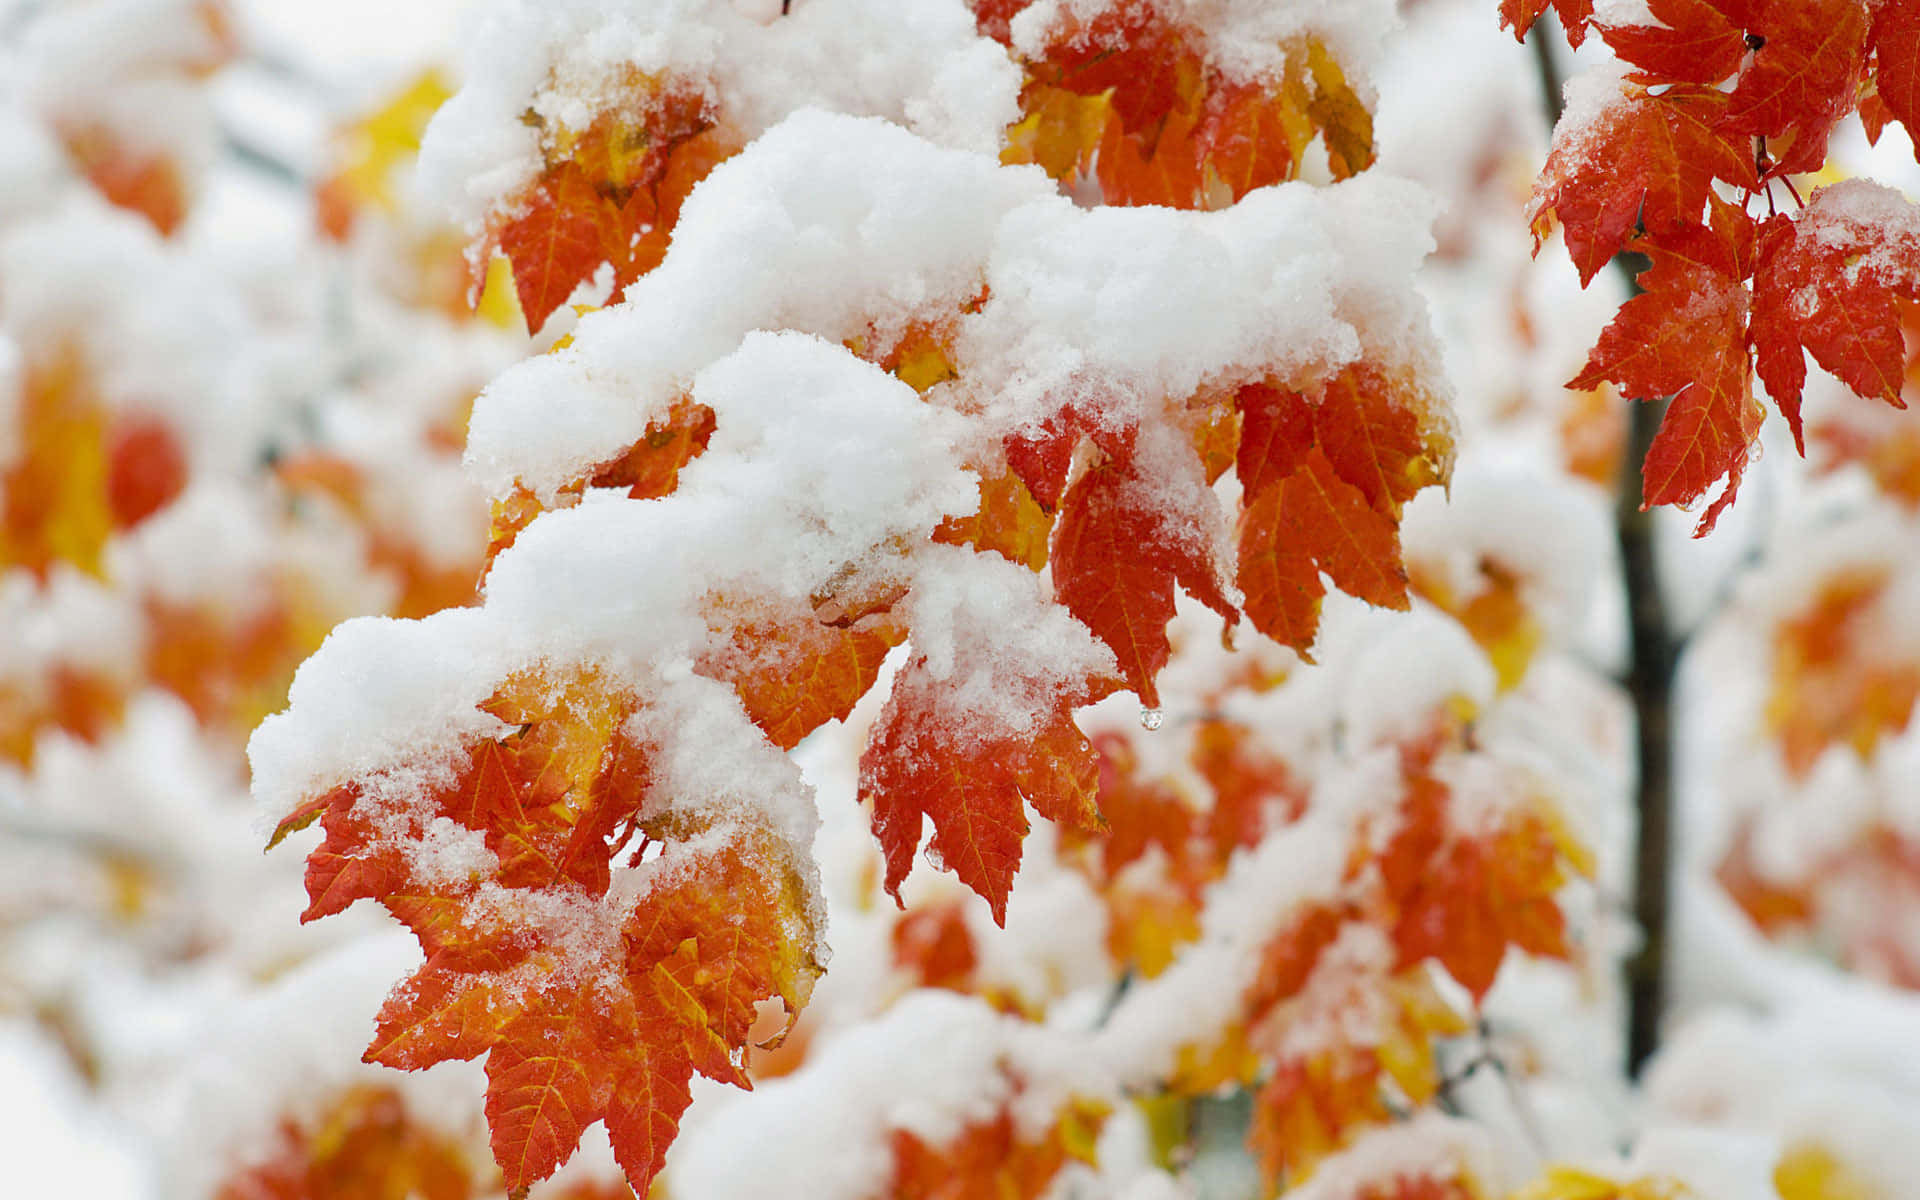 Unarama De Hojas Rojas Y Naranjas Cubierta De Nieve Fondo de pantalla